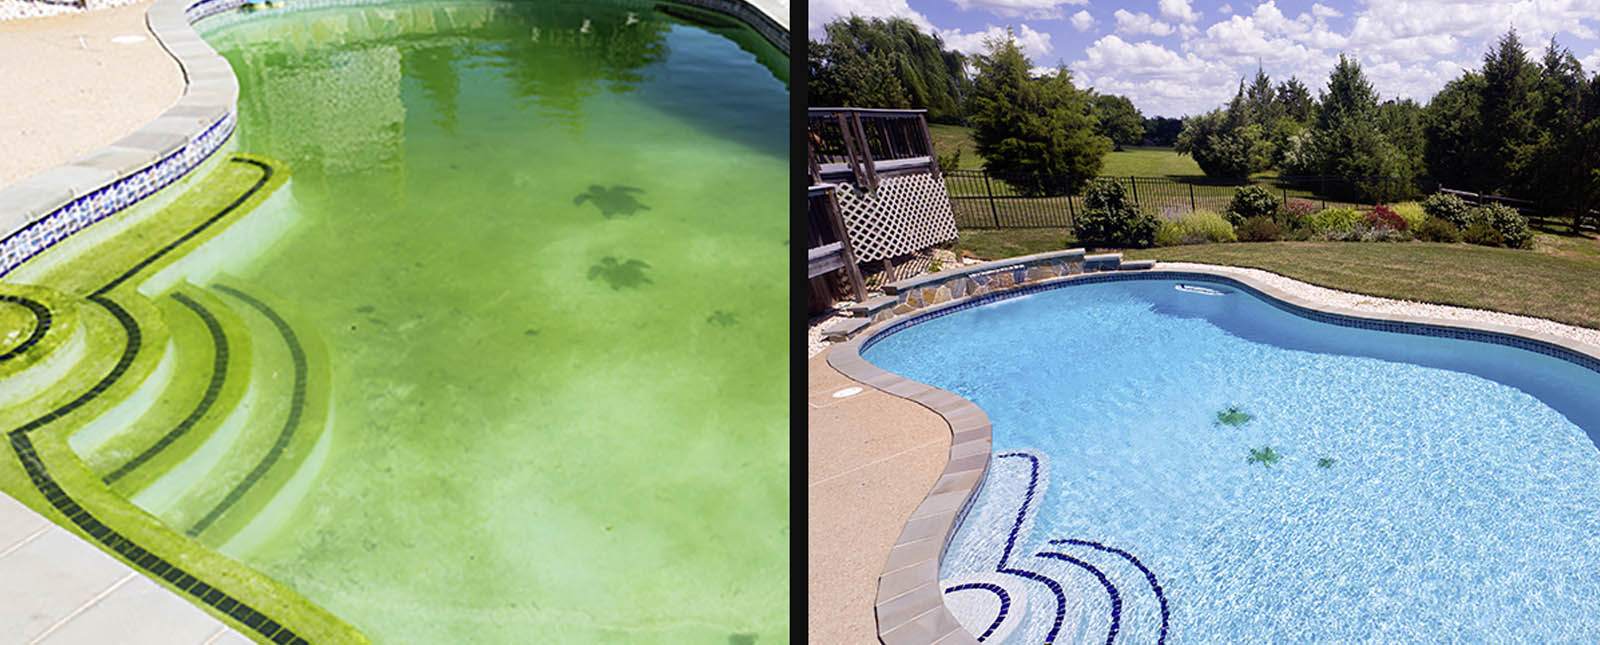 Aprire la piscina in primavera: come trattare un'acqua verde?